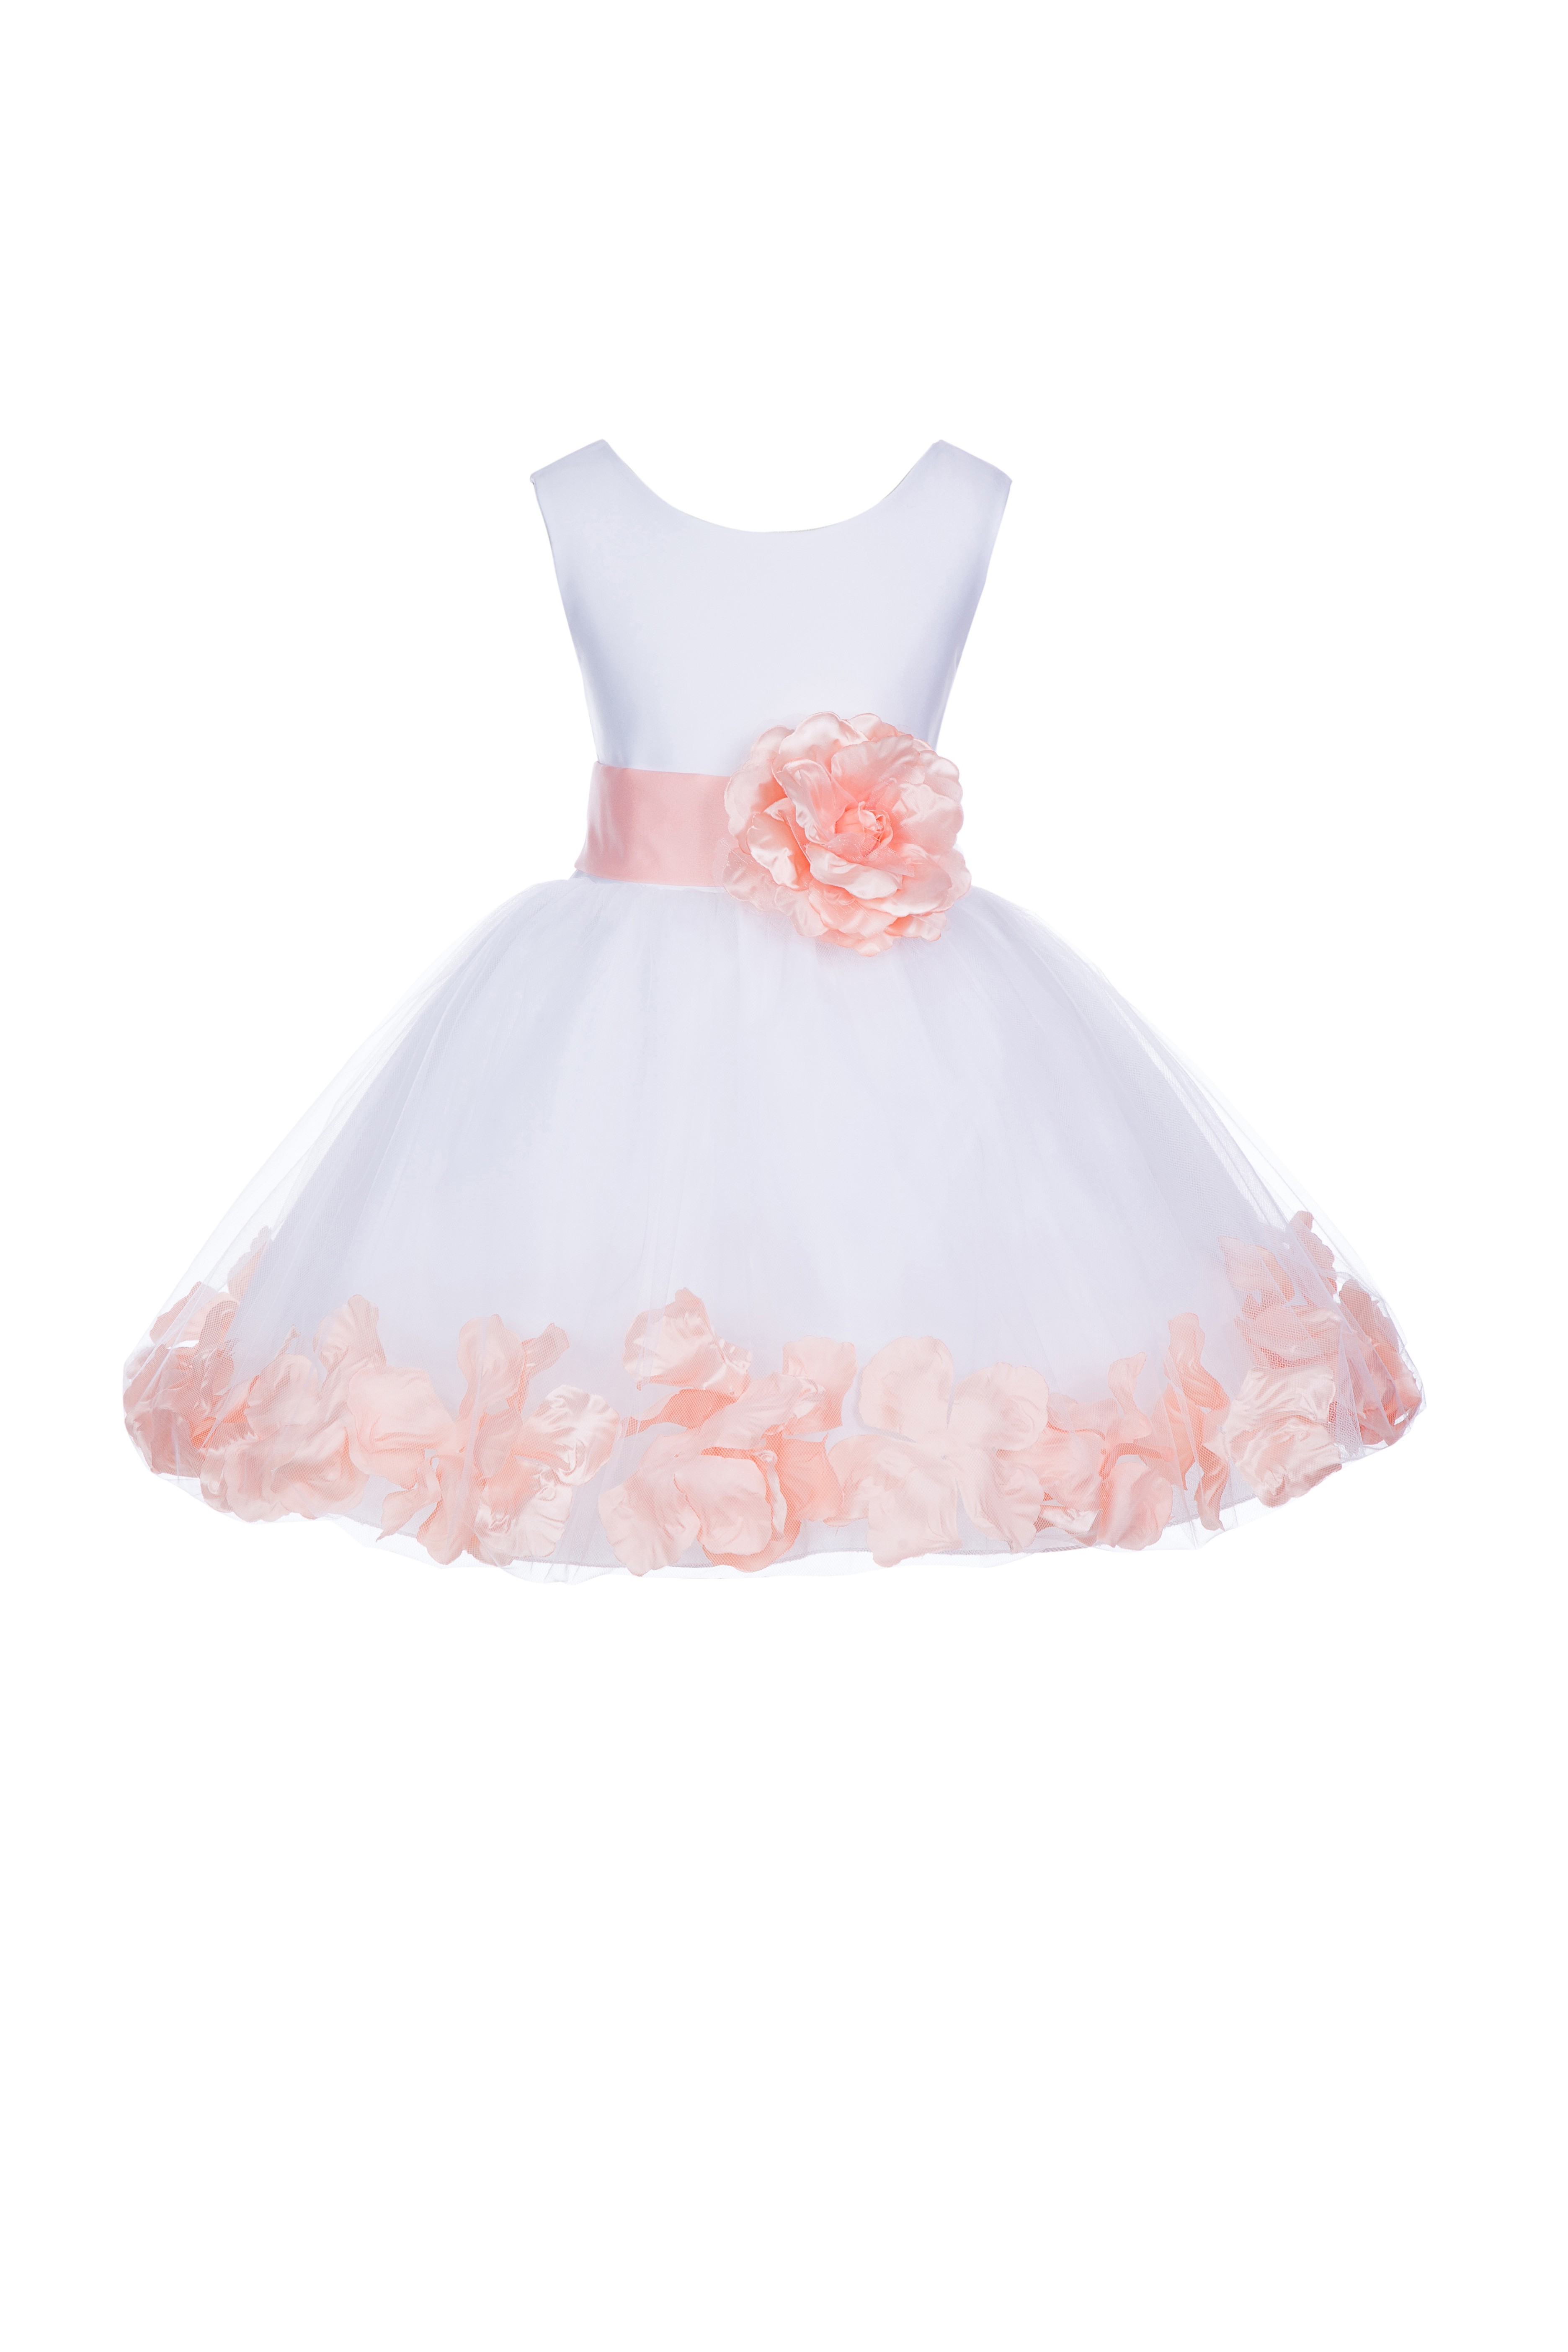 White/Peach Rose Petals Tulle Flower Girl Dress Wedding 305T